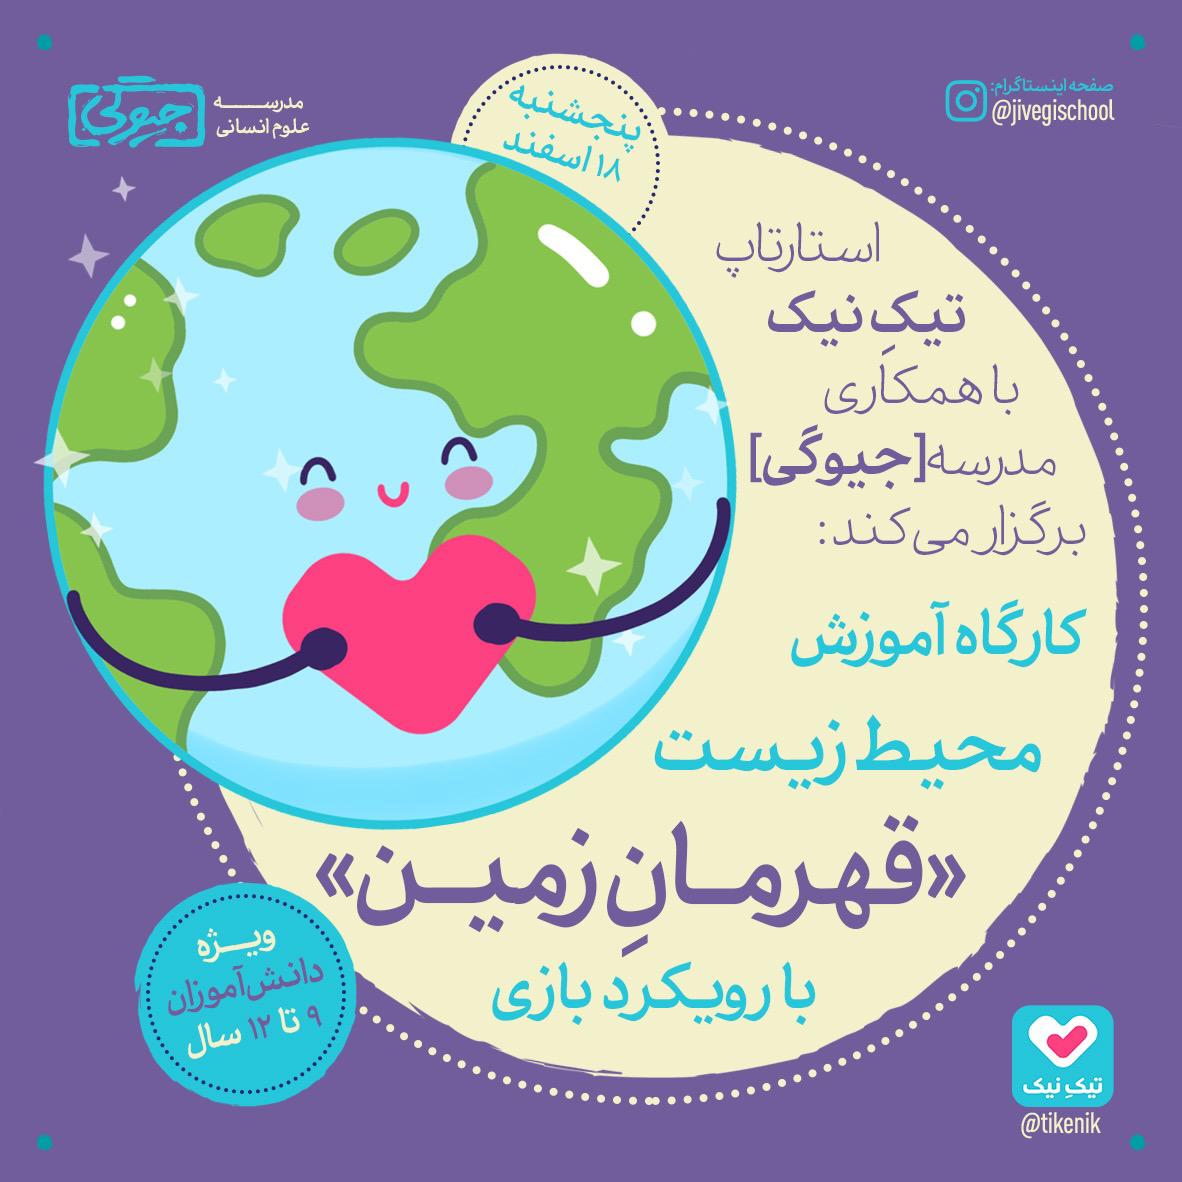 کارگاه محیط زیست قهرمان زمین با رویکرد بازی ویژه کودکان ۹ تا ۱۲ سال